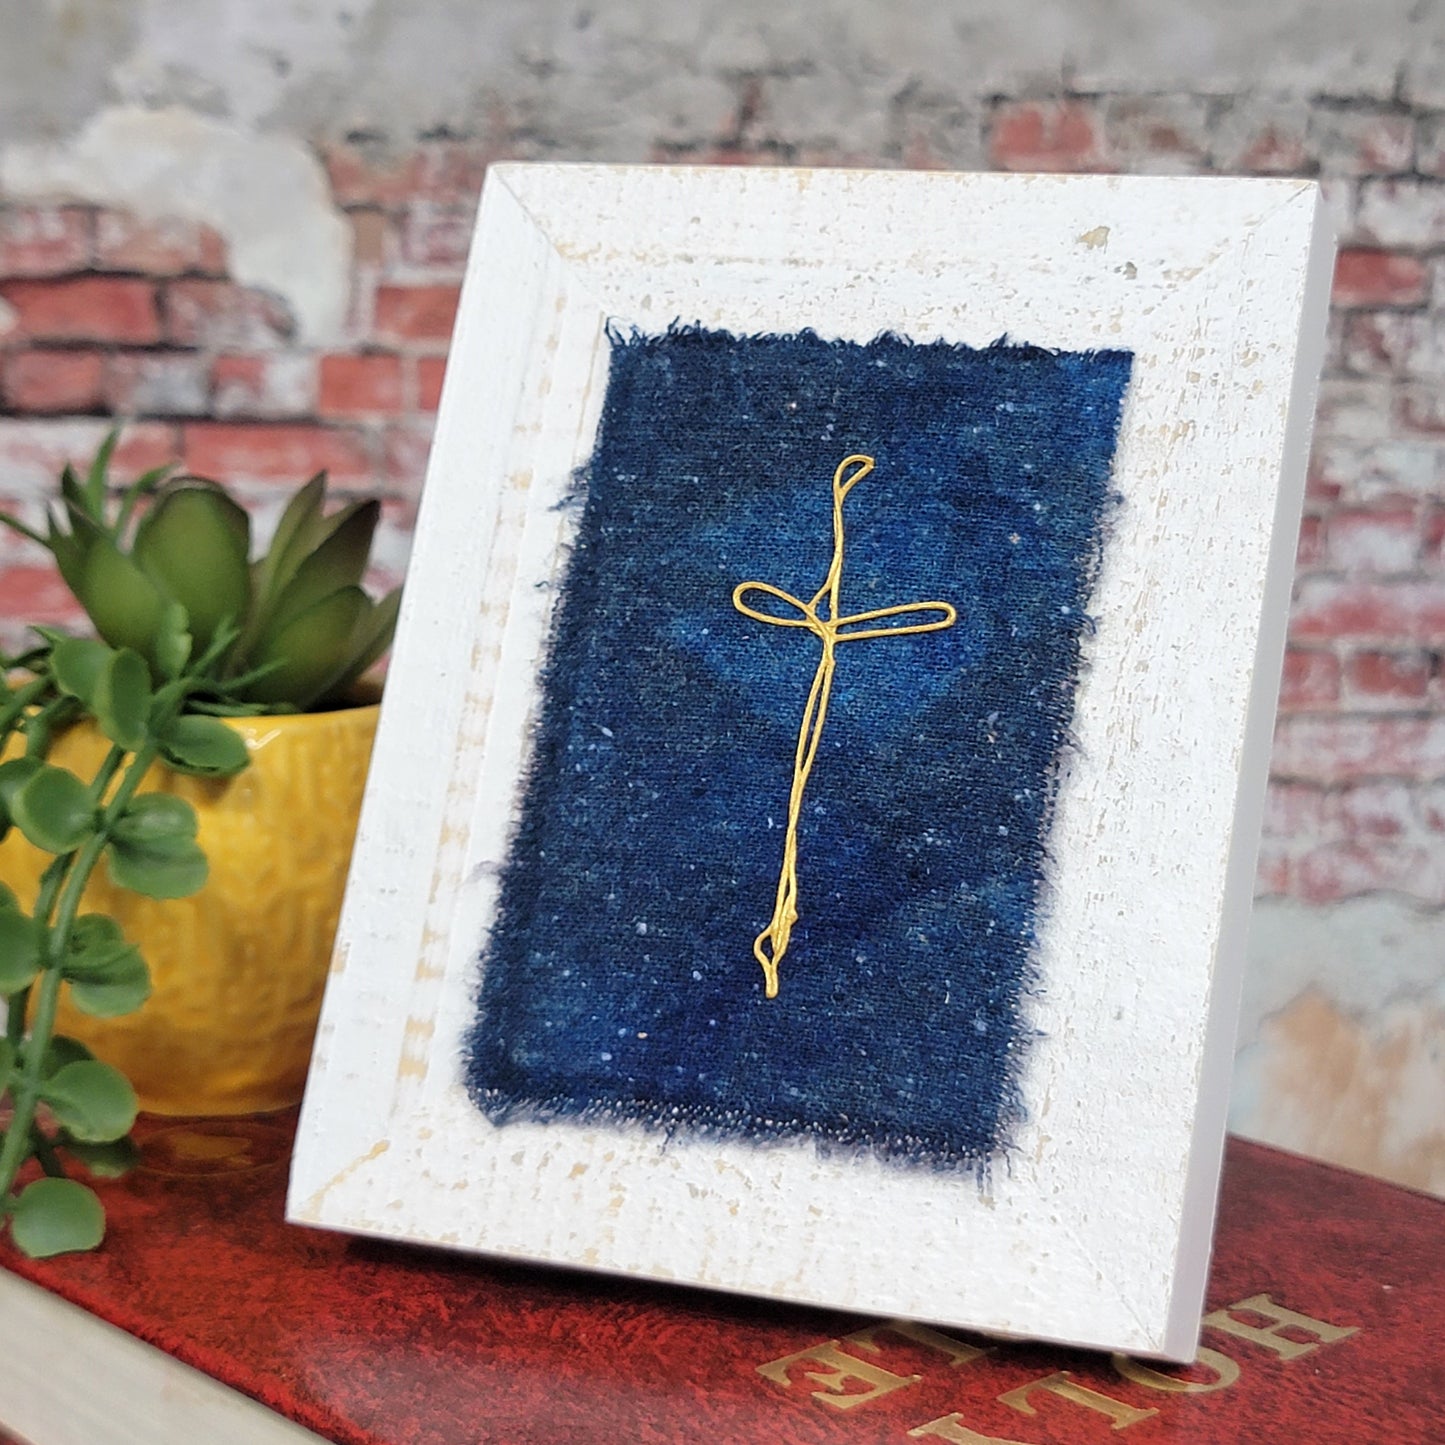 Swirled Cross on Silk Noil Mini Frame (332)